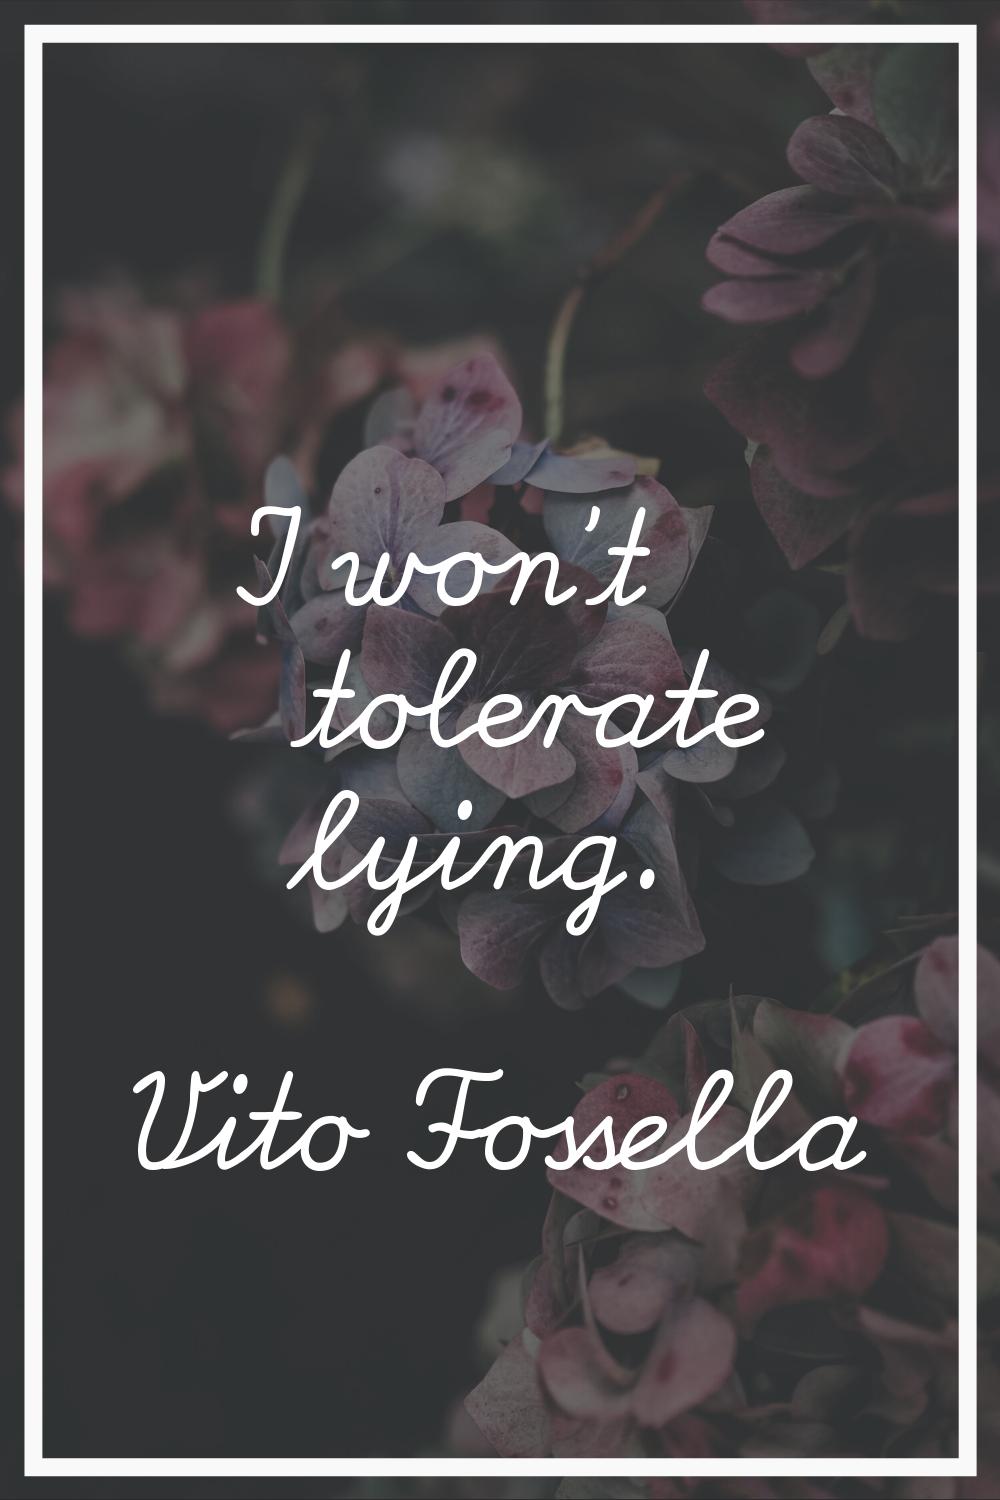 I won't tolerate lying.